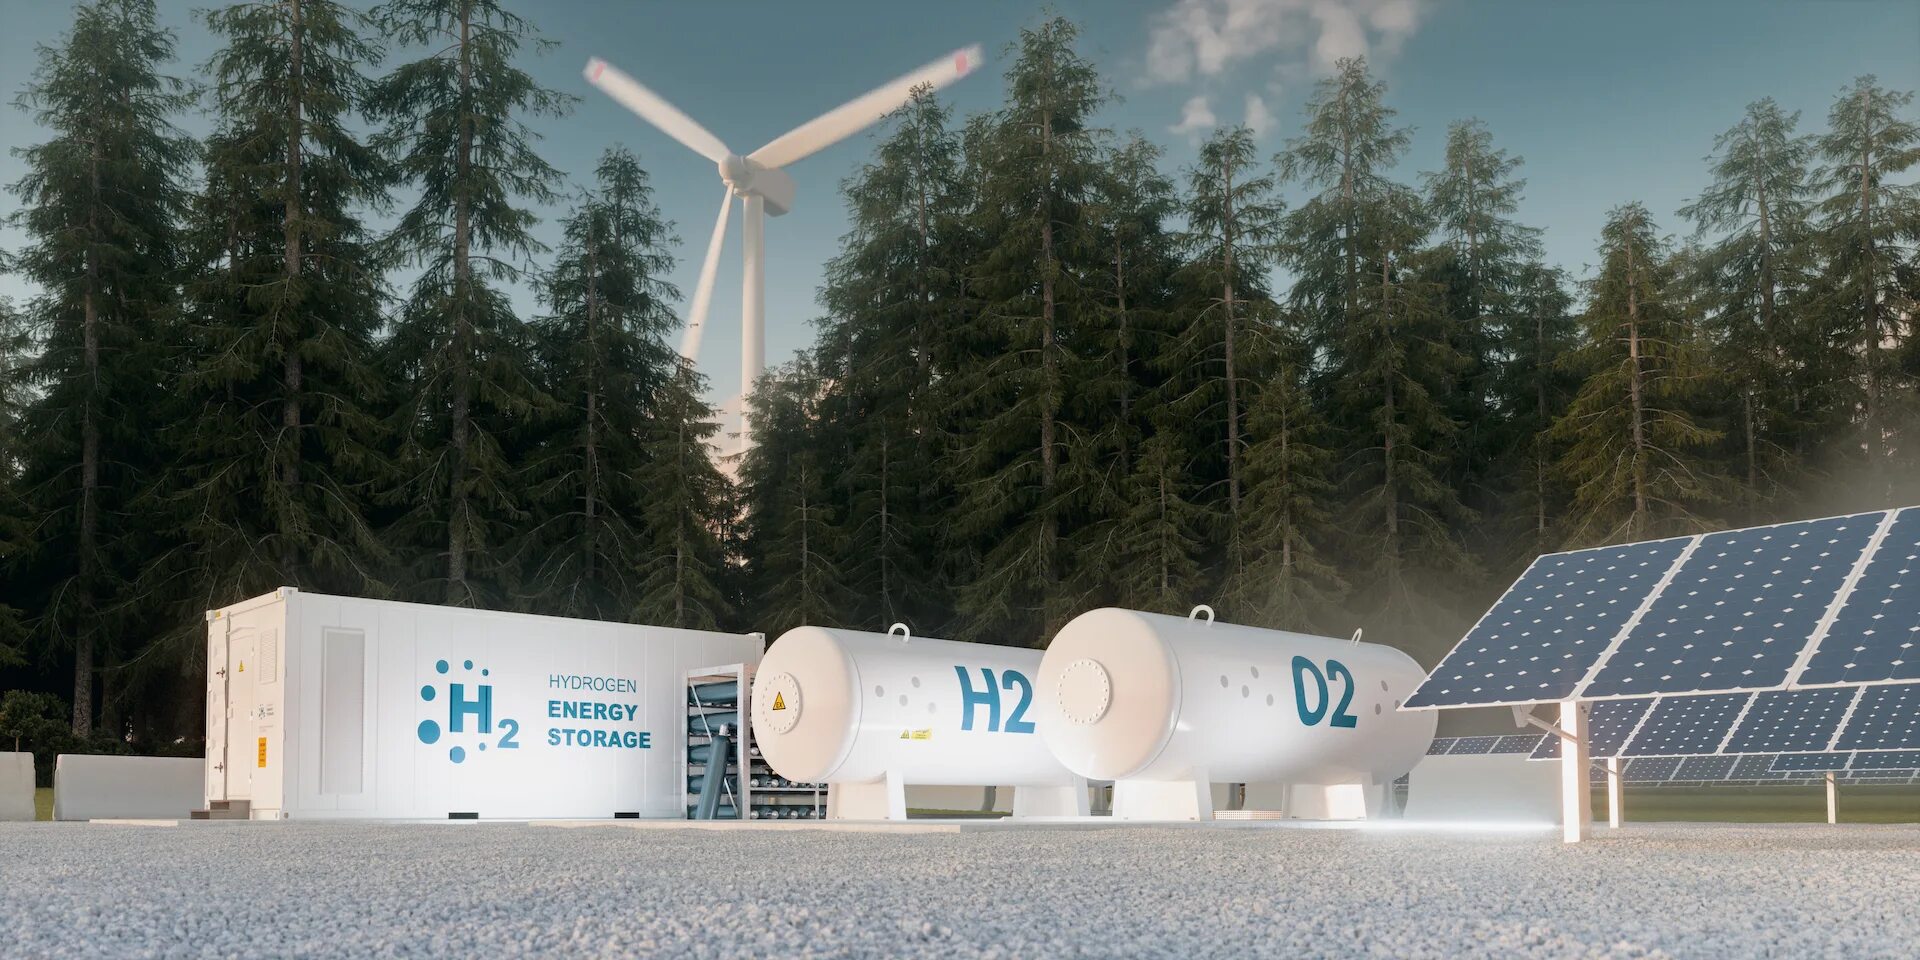 Водородная электростанция Enel. Hydrogen Energy Storage. Альтернативная Энергетика водородная Энергетика. Водородные источники энергии. Водородные проекты